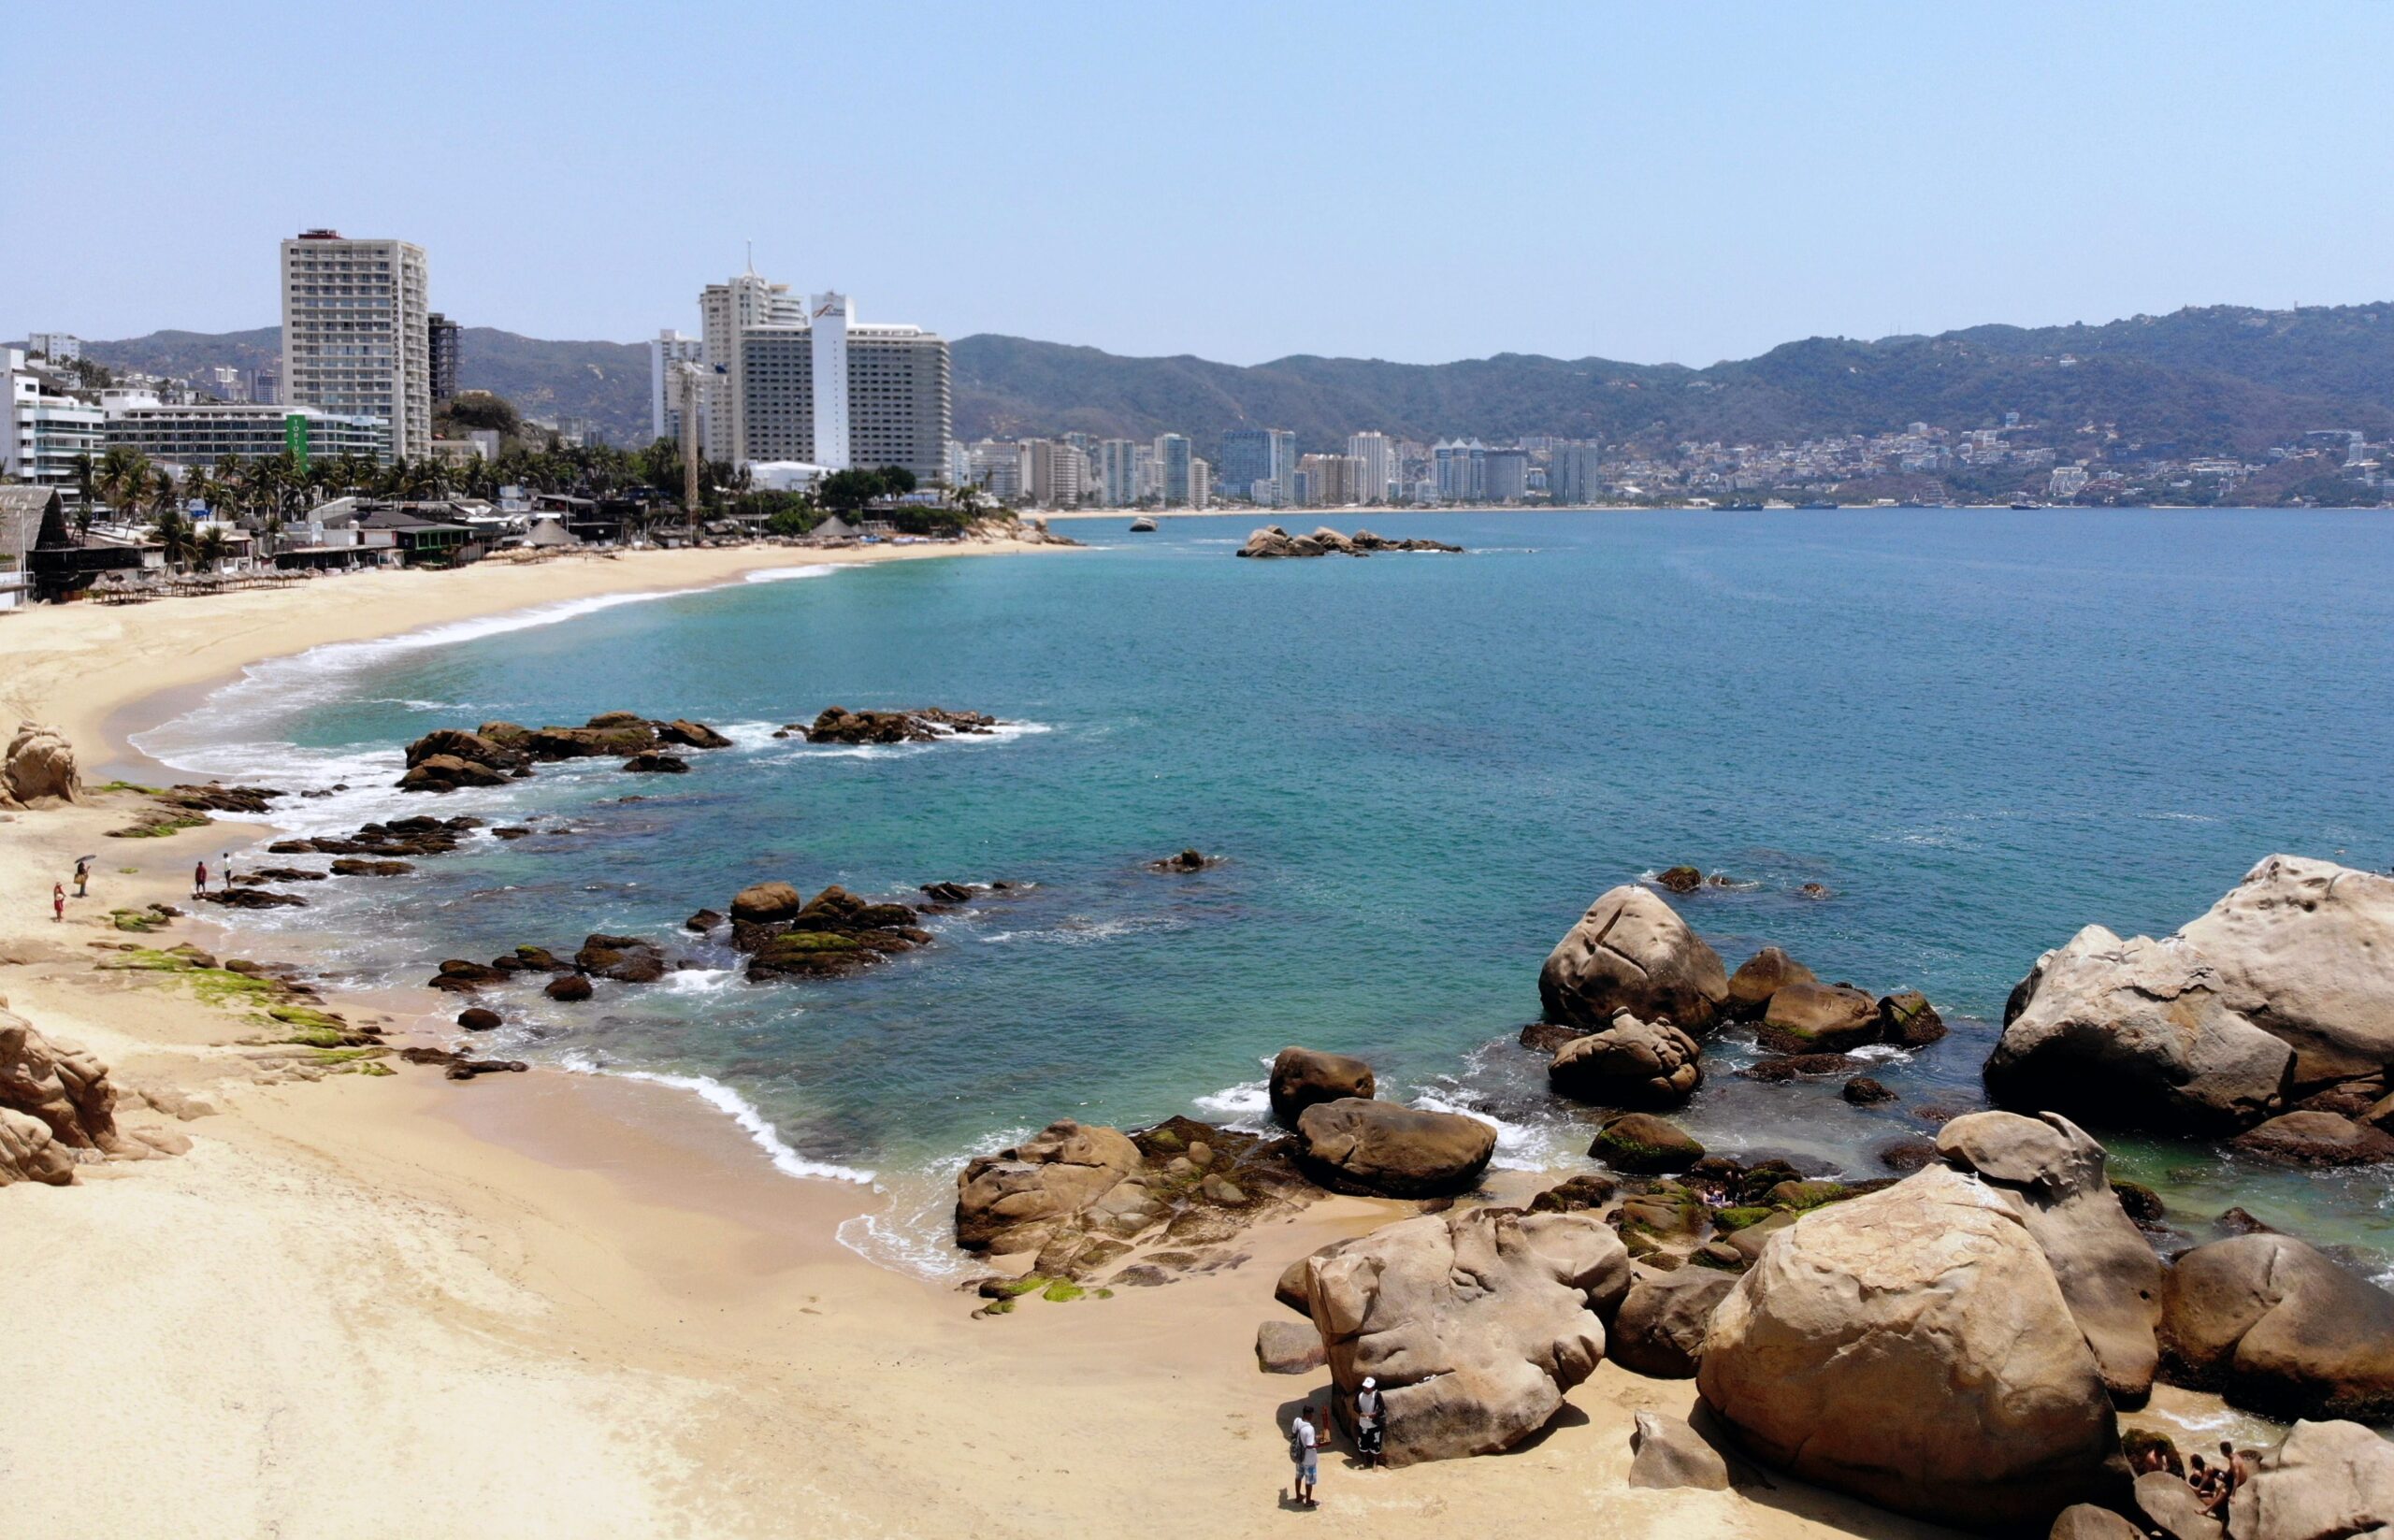 ¿Año nuevo en la playa? ¡Este año no! Cierran playas de Acapulco para evitar contagios de Covid-19